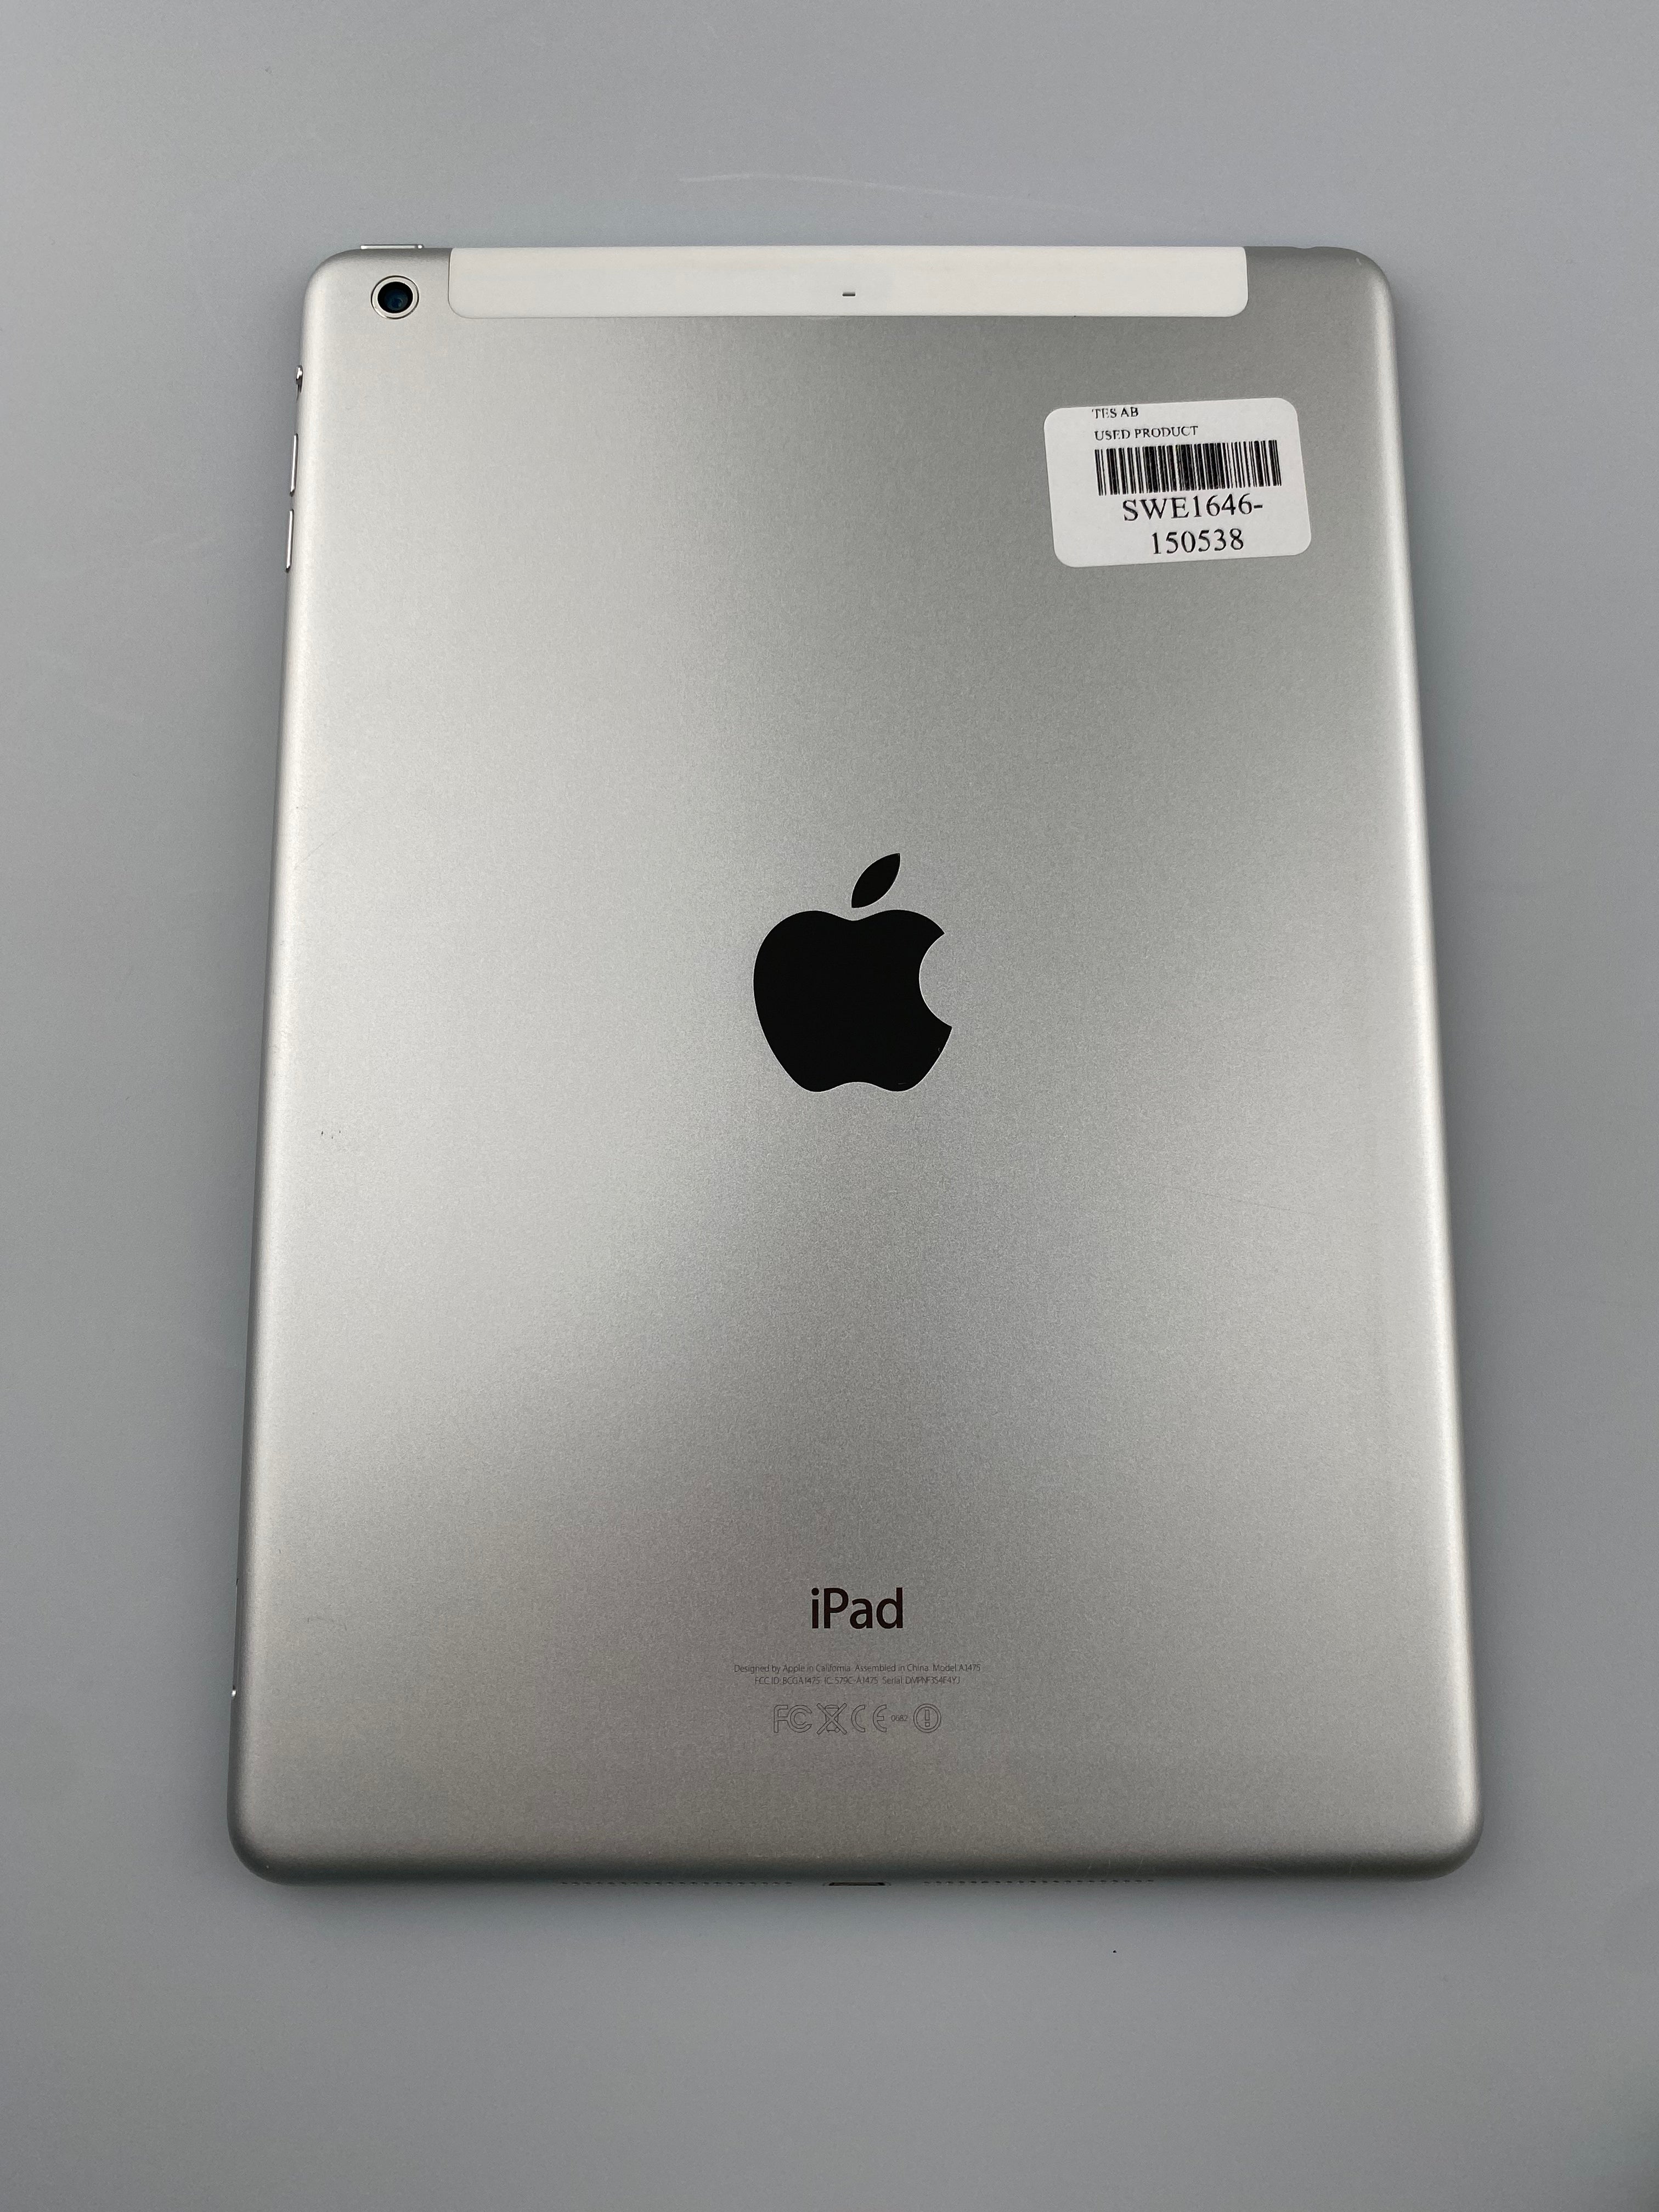 iPad Air 1 Wi-Fi + Cellular 32 GB Silver 2013